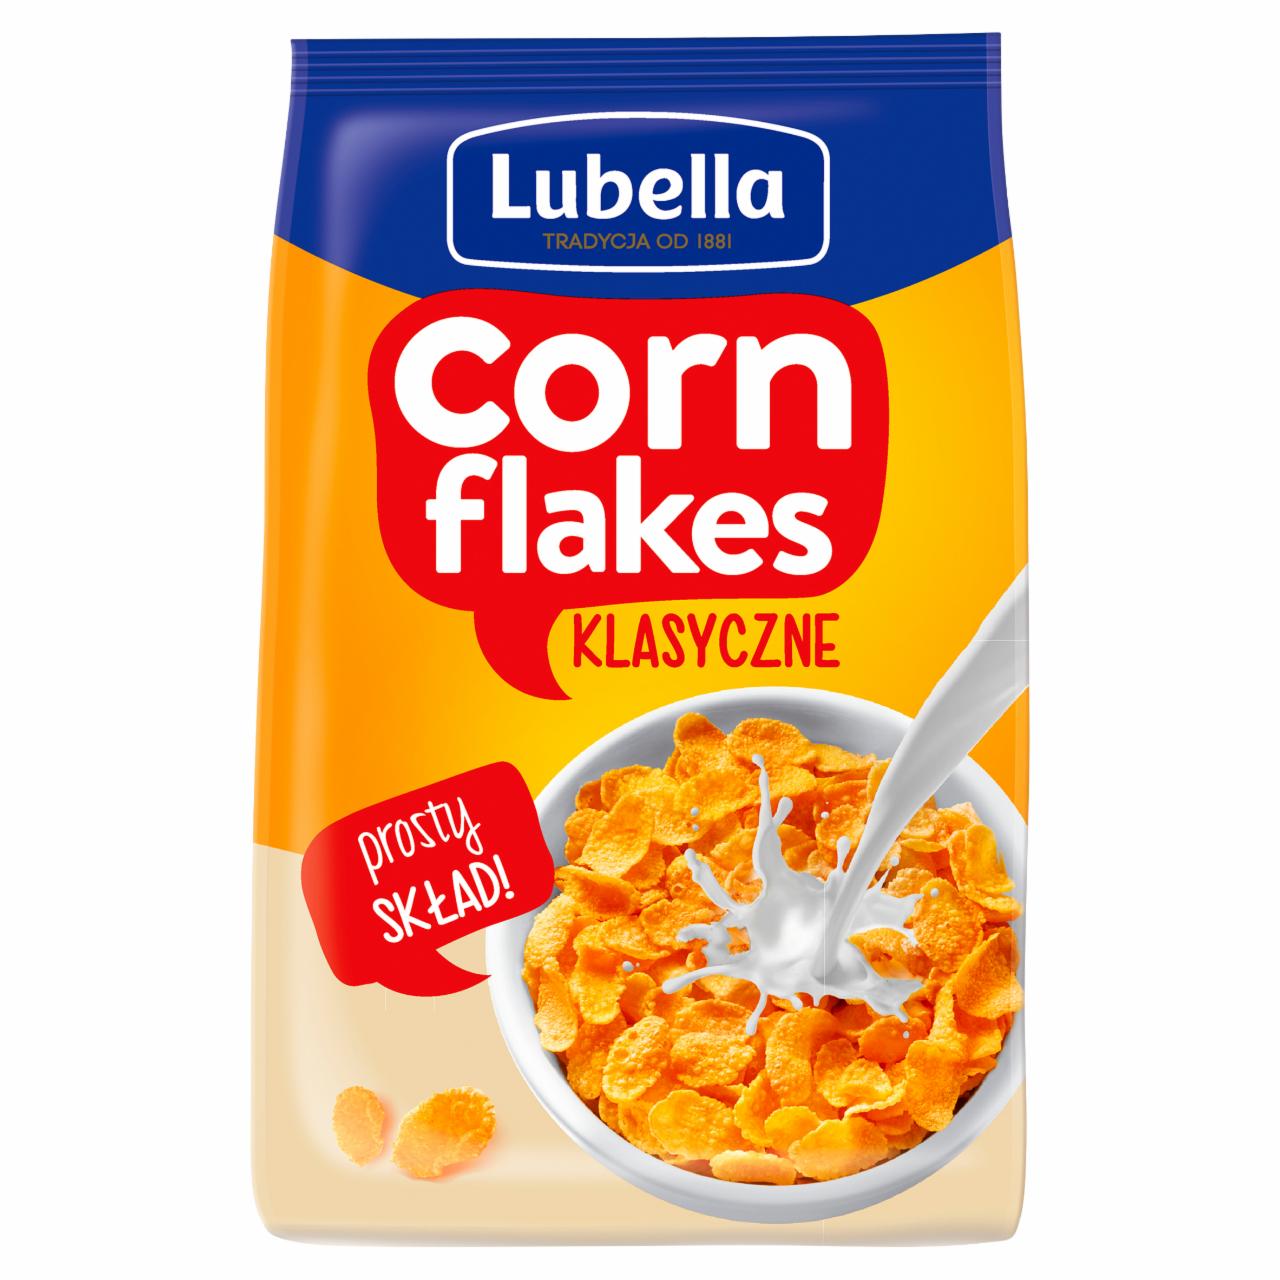 Zdjęcia - Lubella Corn Flakes Płatki kukurydziane klasyczne 500 g